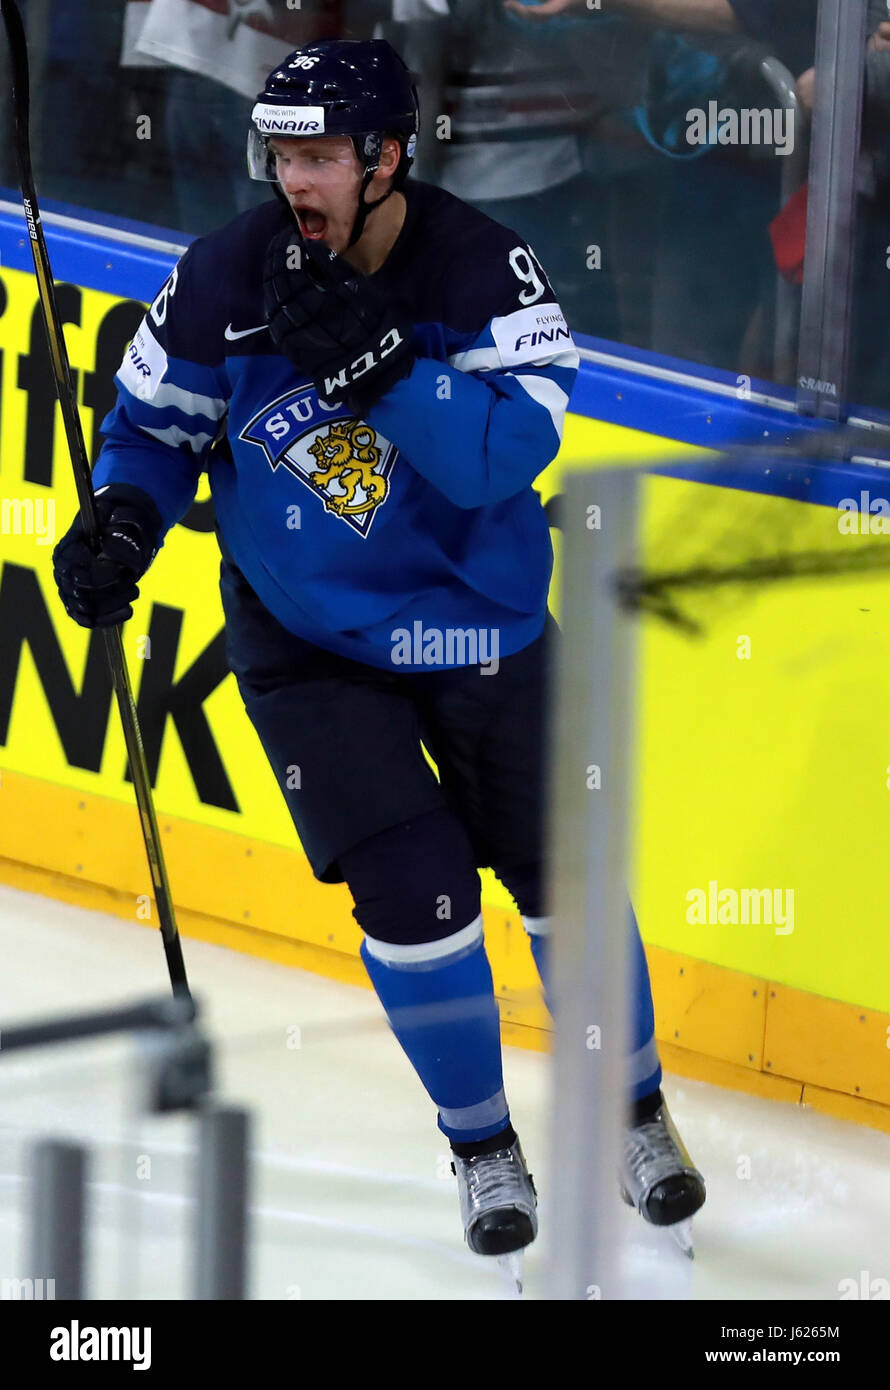 1,229 Mikko Rantanen Ice Hockey Player Stock Photos, High-Res